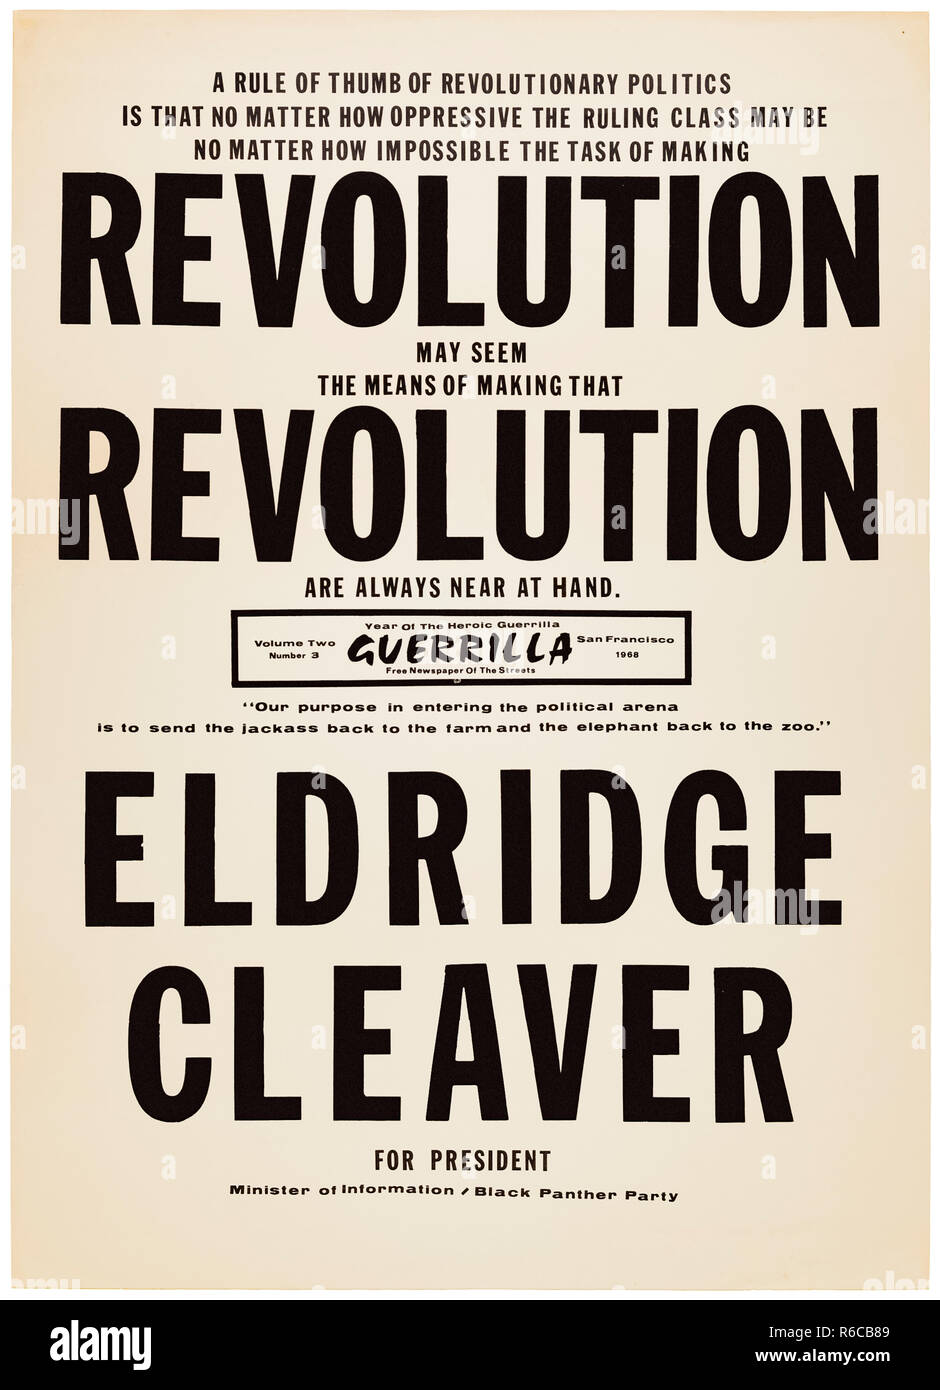 "Revolución Revolución Eldridge Cleaver para Presidente' el póster de la campaña presidencial de 1968 como candidato del Partido Pantera Negra. Ver más información a continuación. Foto de stock